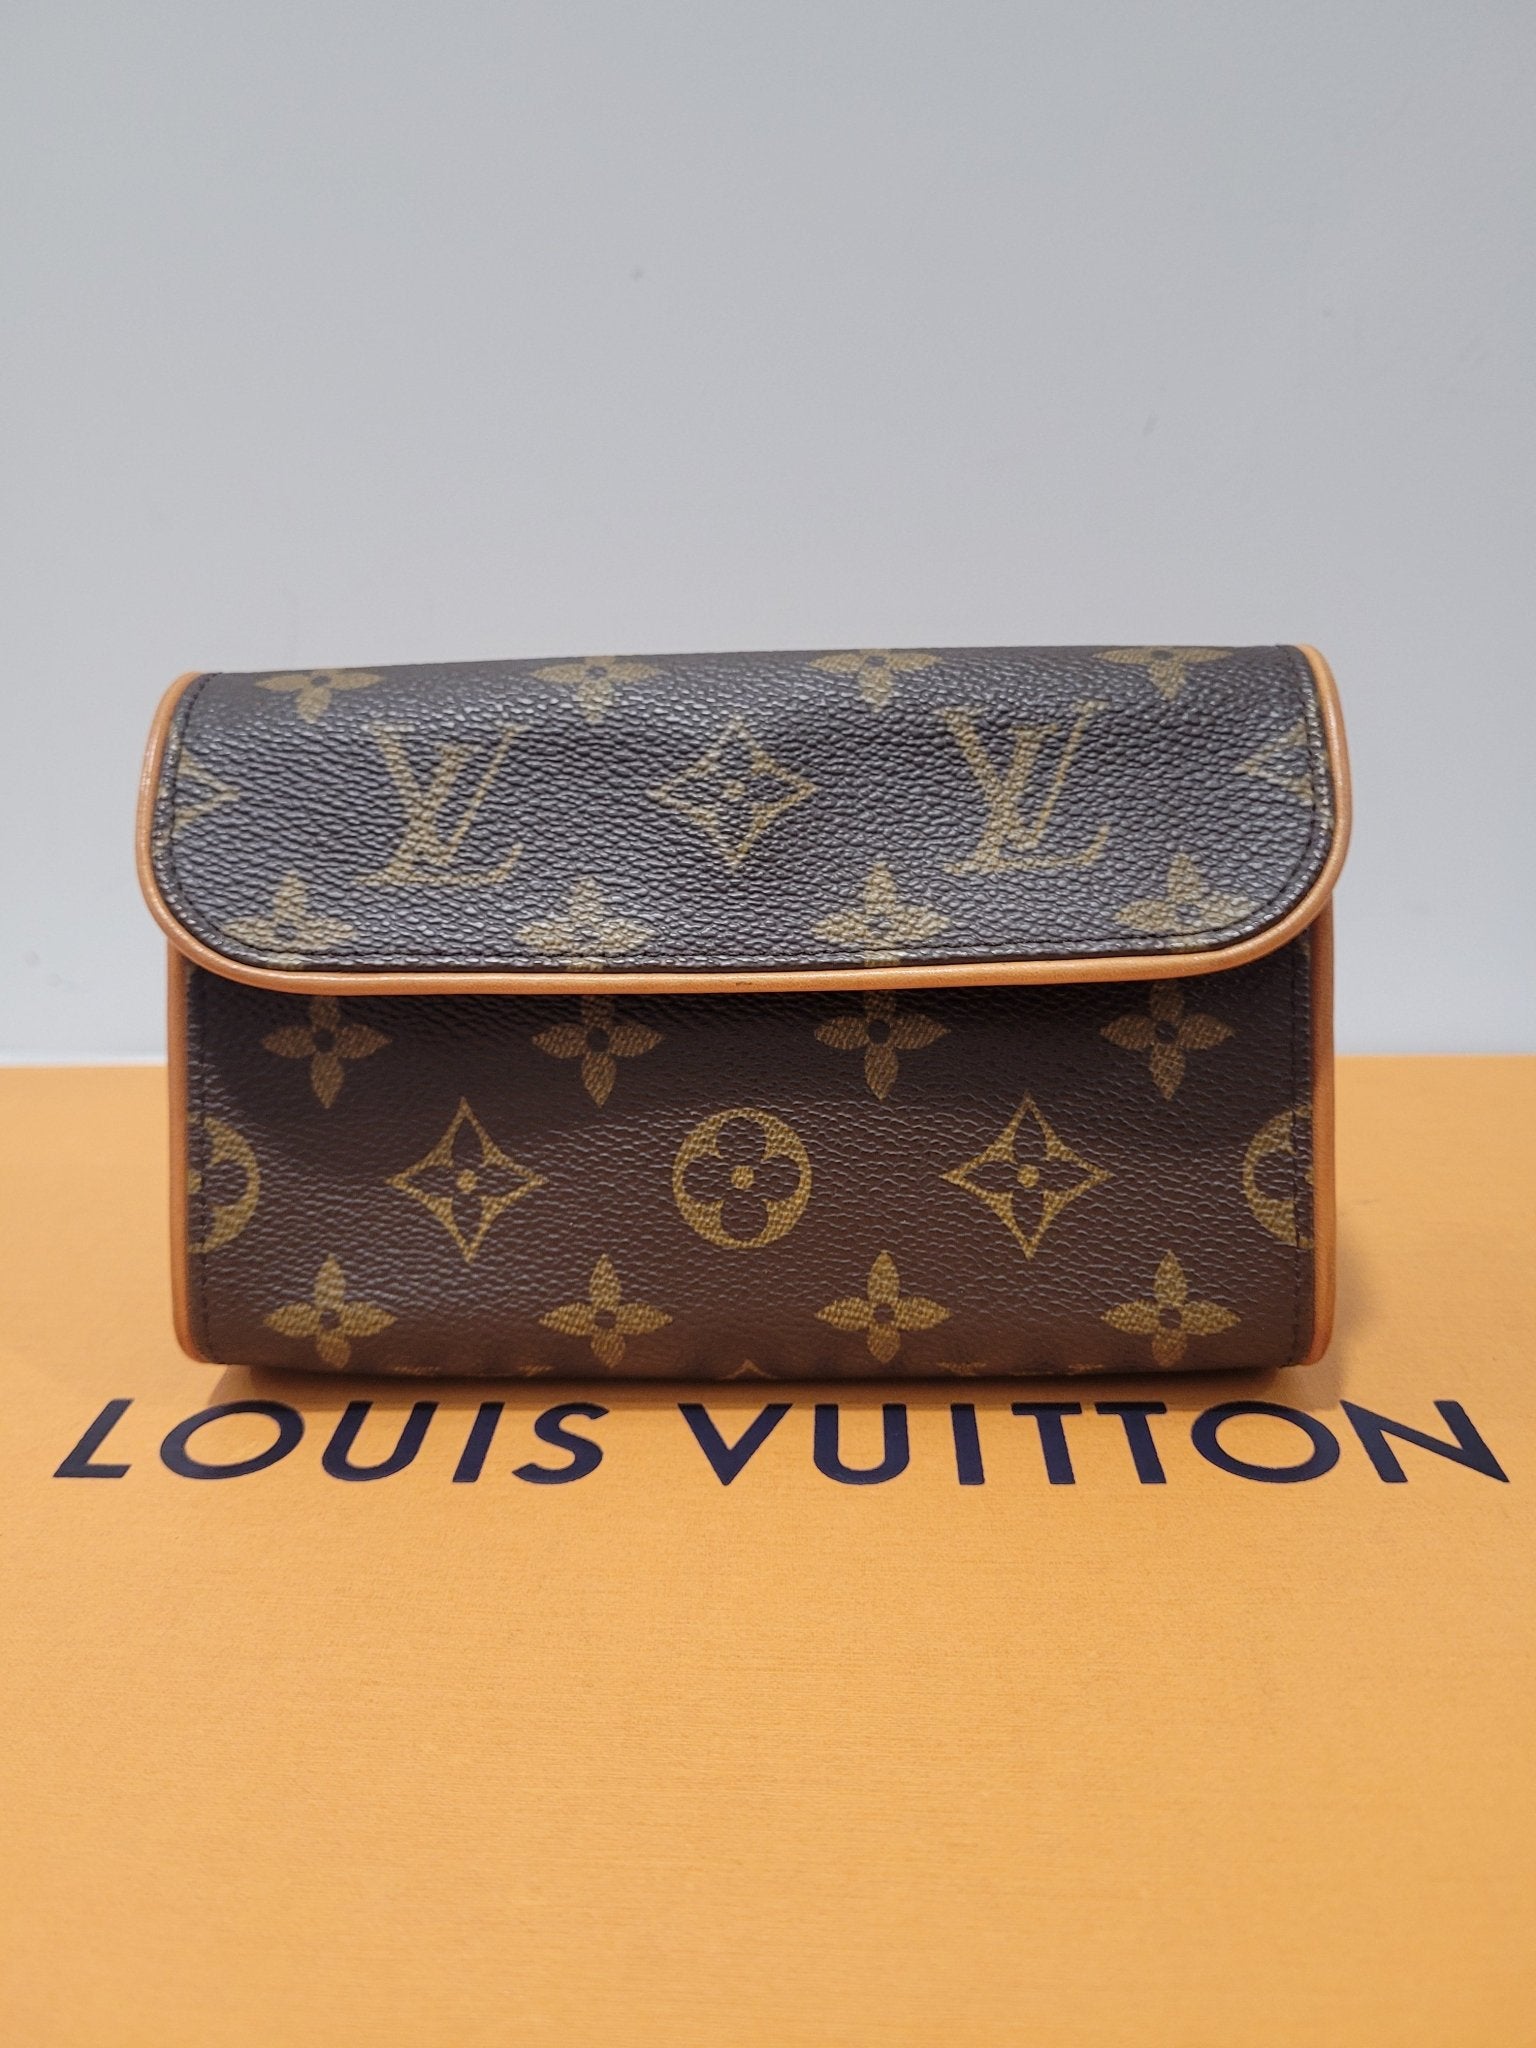 Louis Vuitton - pochette Florentine – Les Folies d'Eugenie